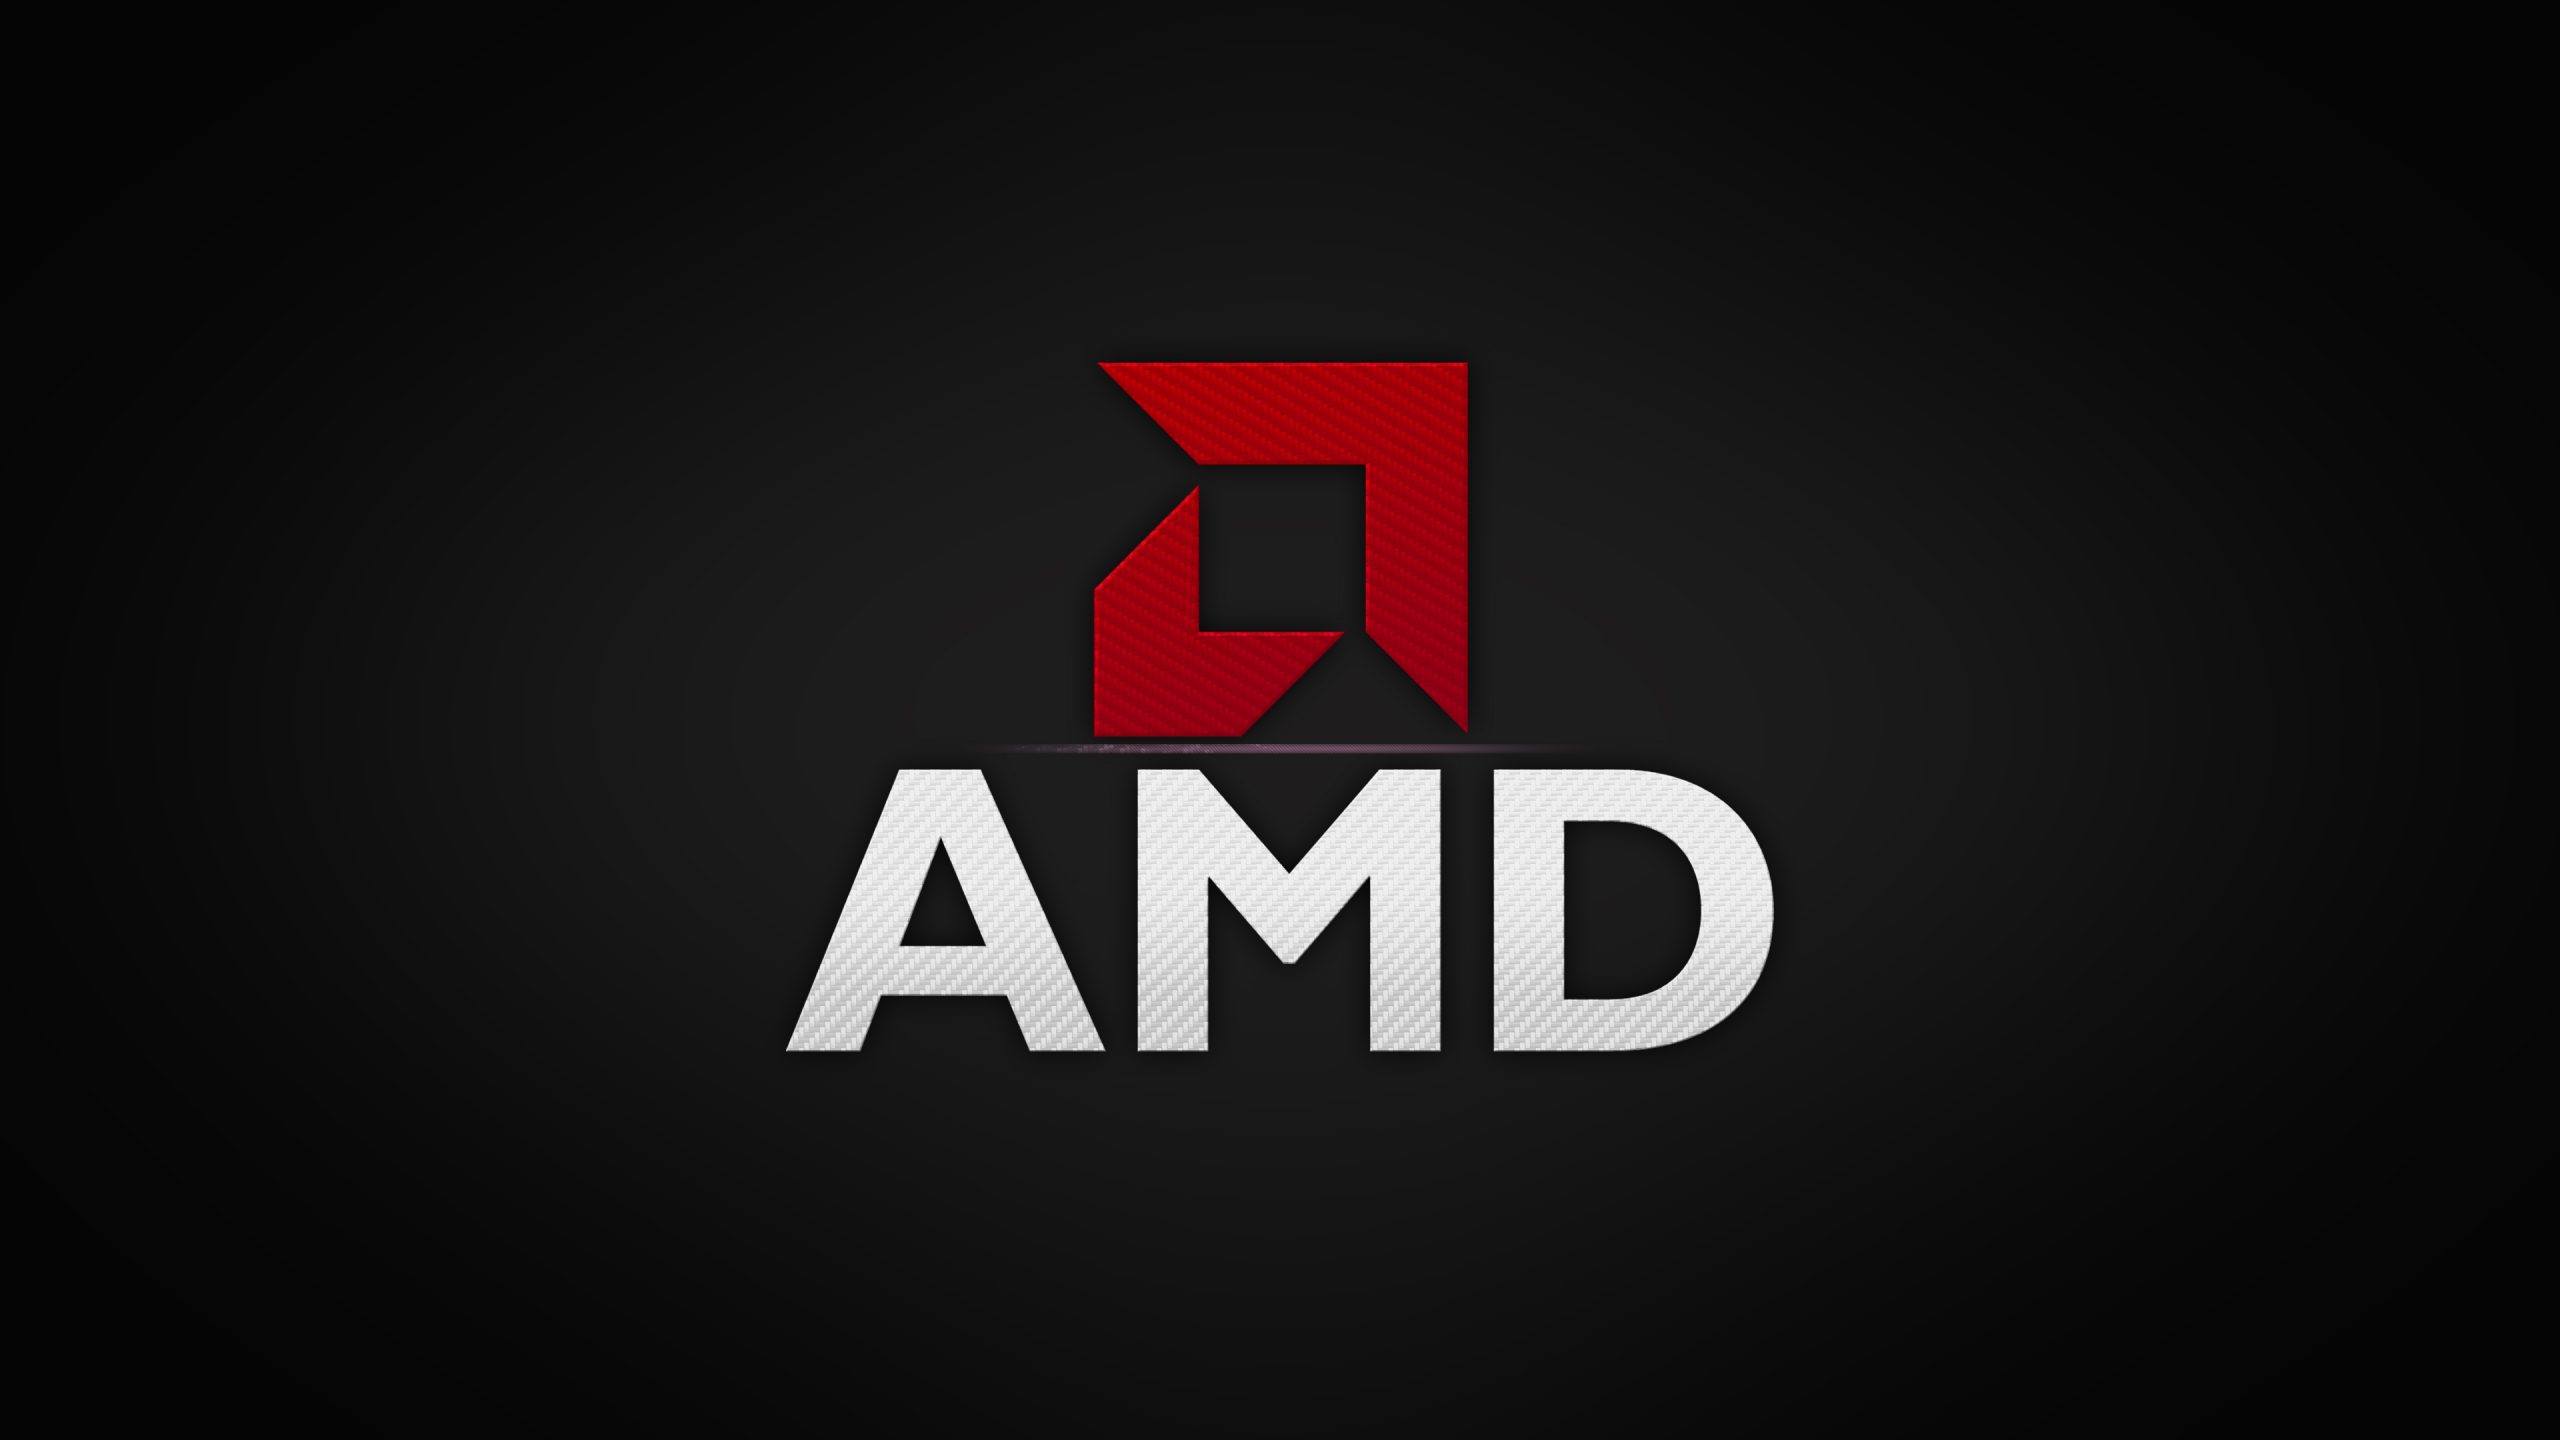 گزارش مالی کلی سال 2018 شرکت AMD ارائه شد